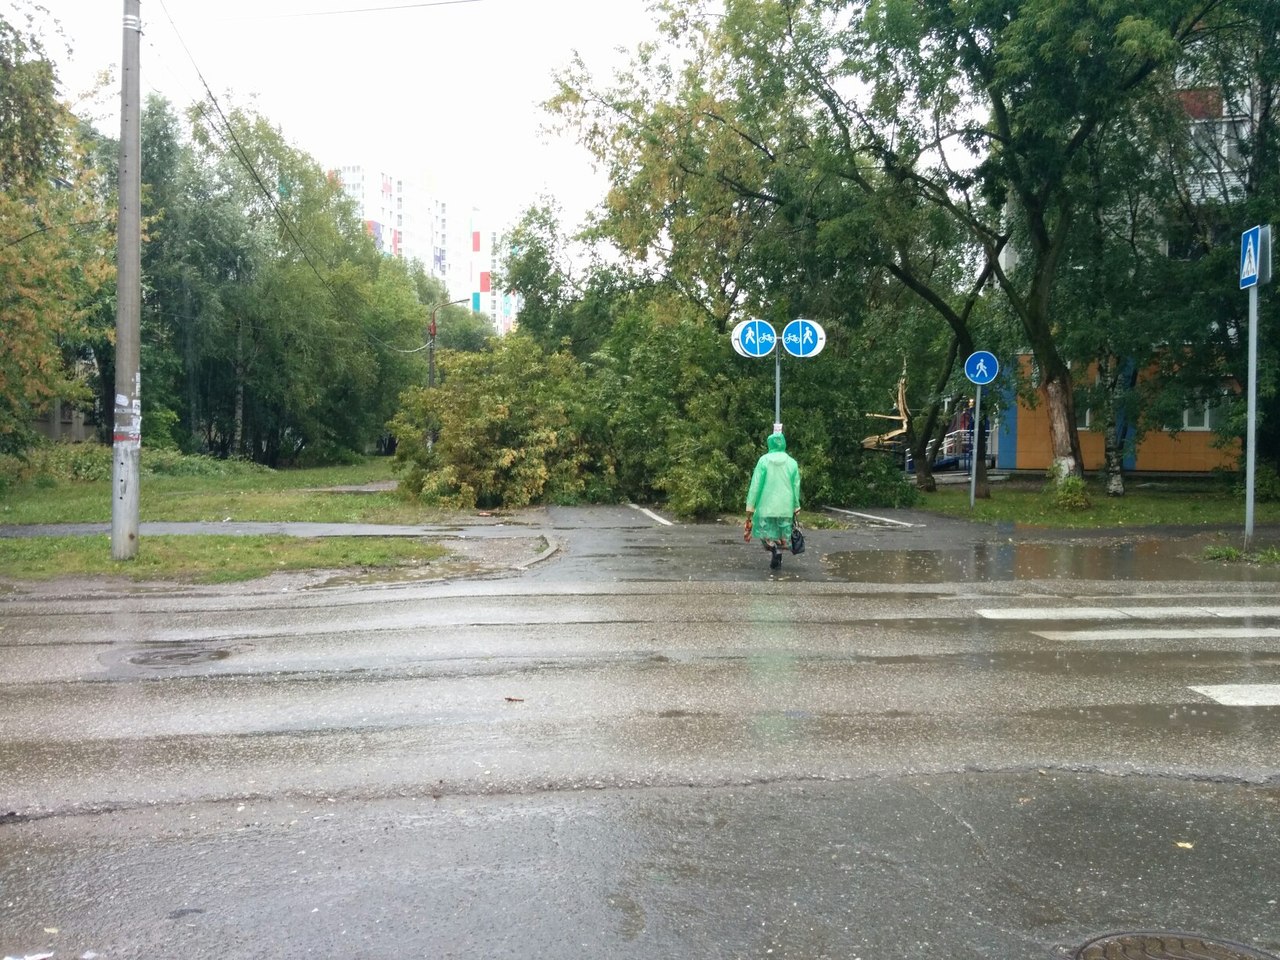 Поваленный рекламный щит, остановки и деревья:  последствия непогоды в Перми в соцсетях